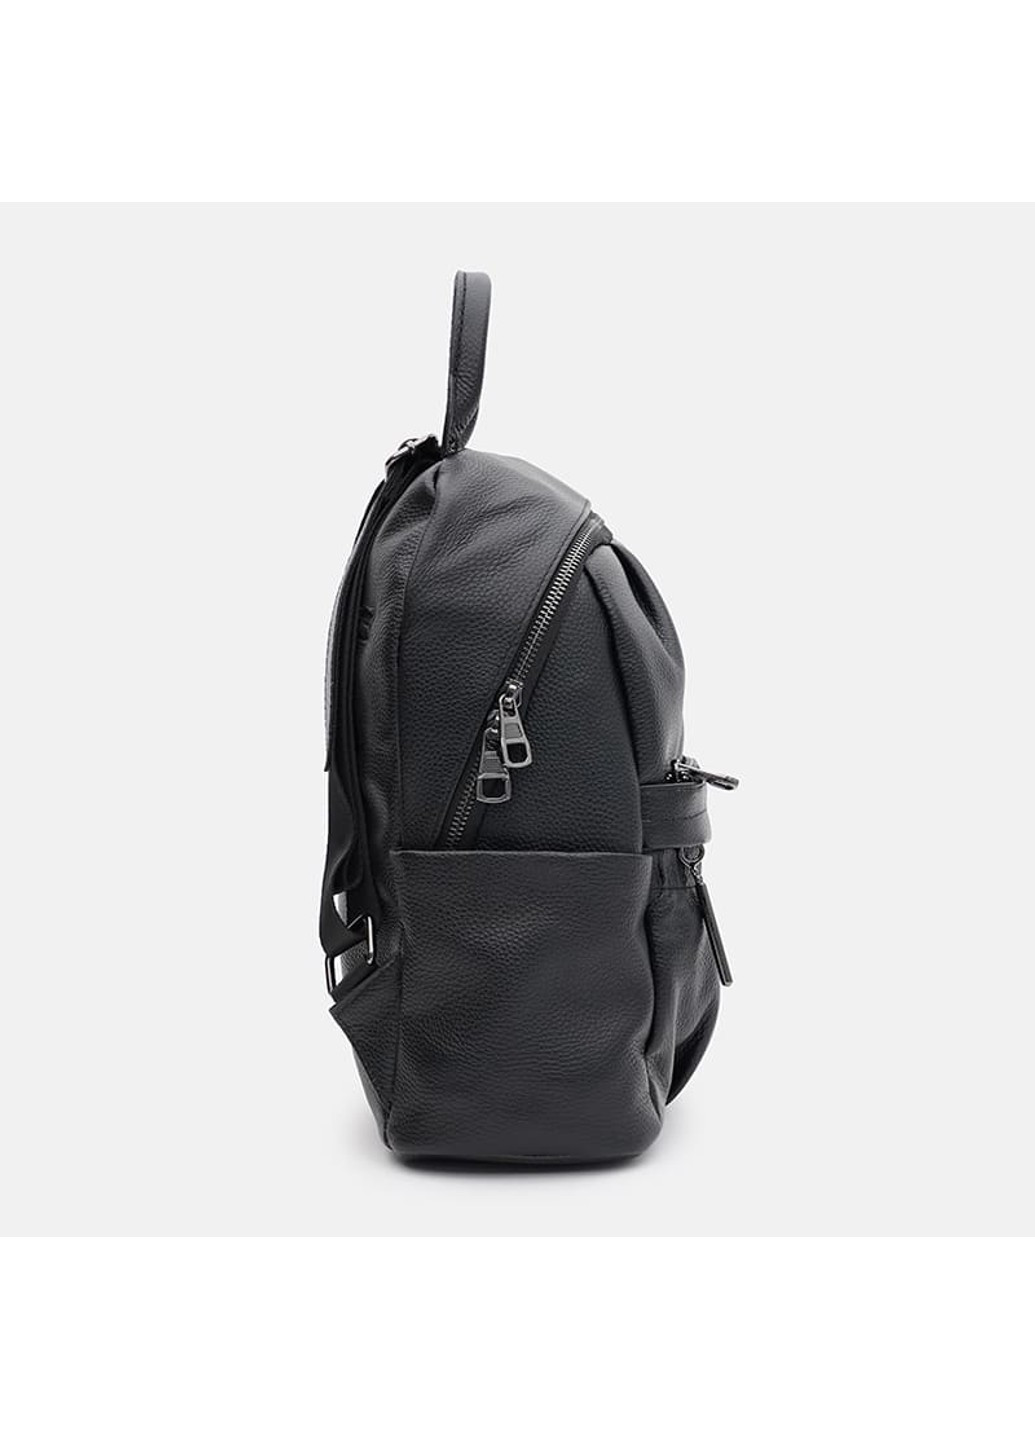 Шкіряний жіночий рюкзак K18166bl-black Ricco Grande (266144094)